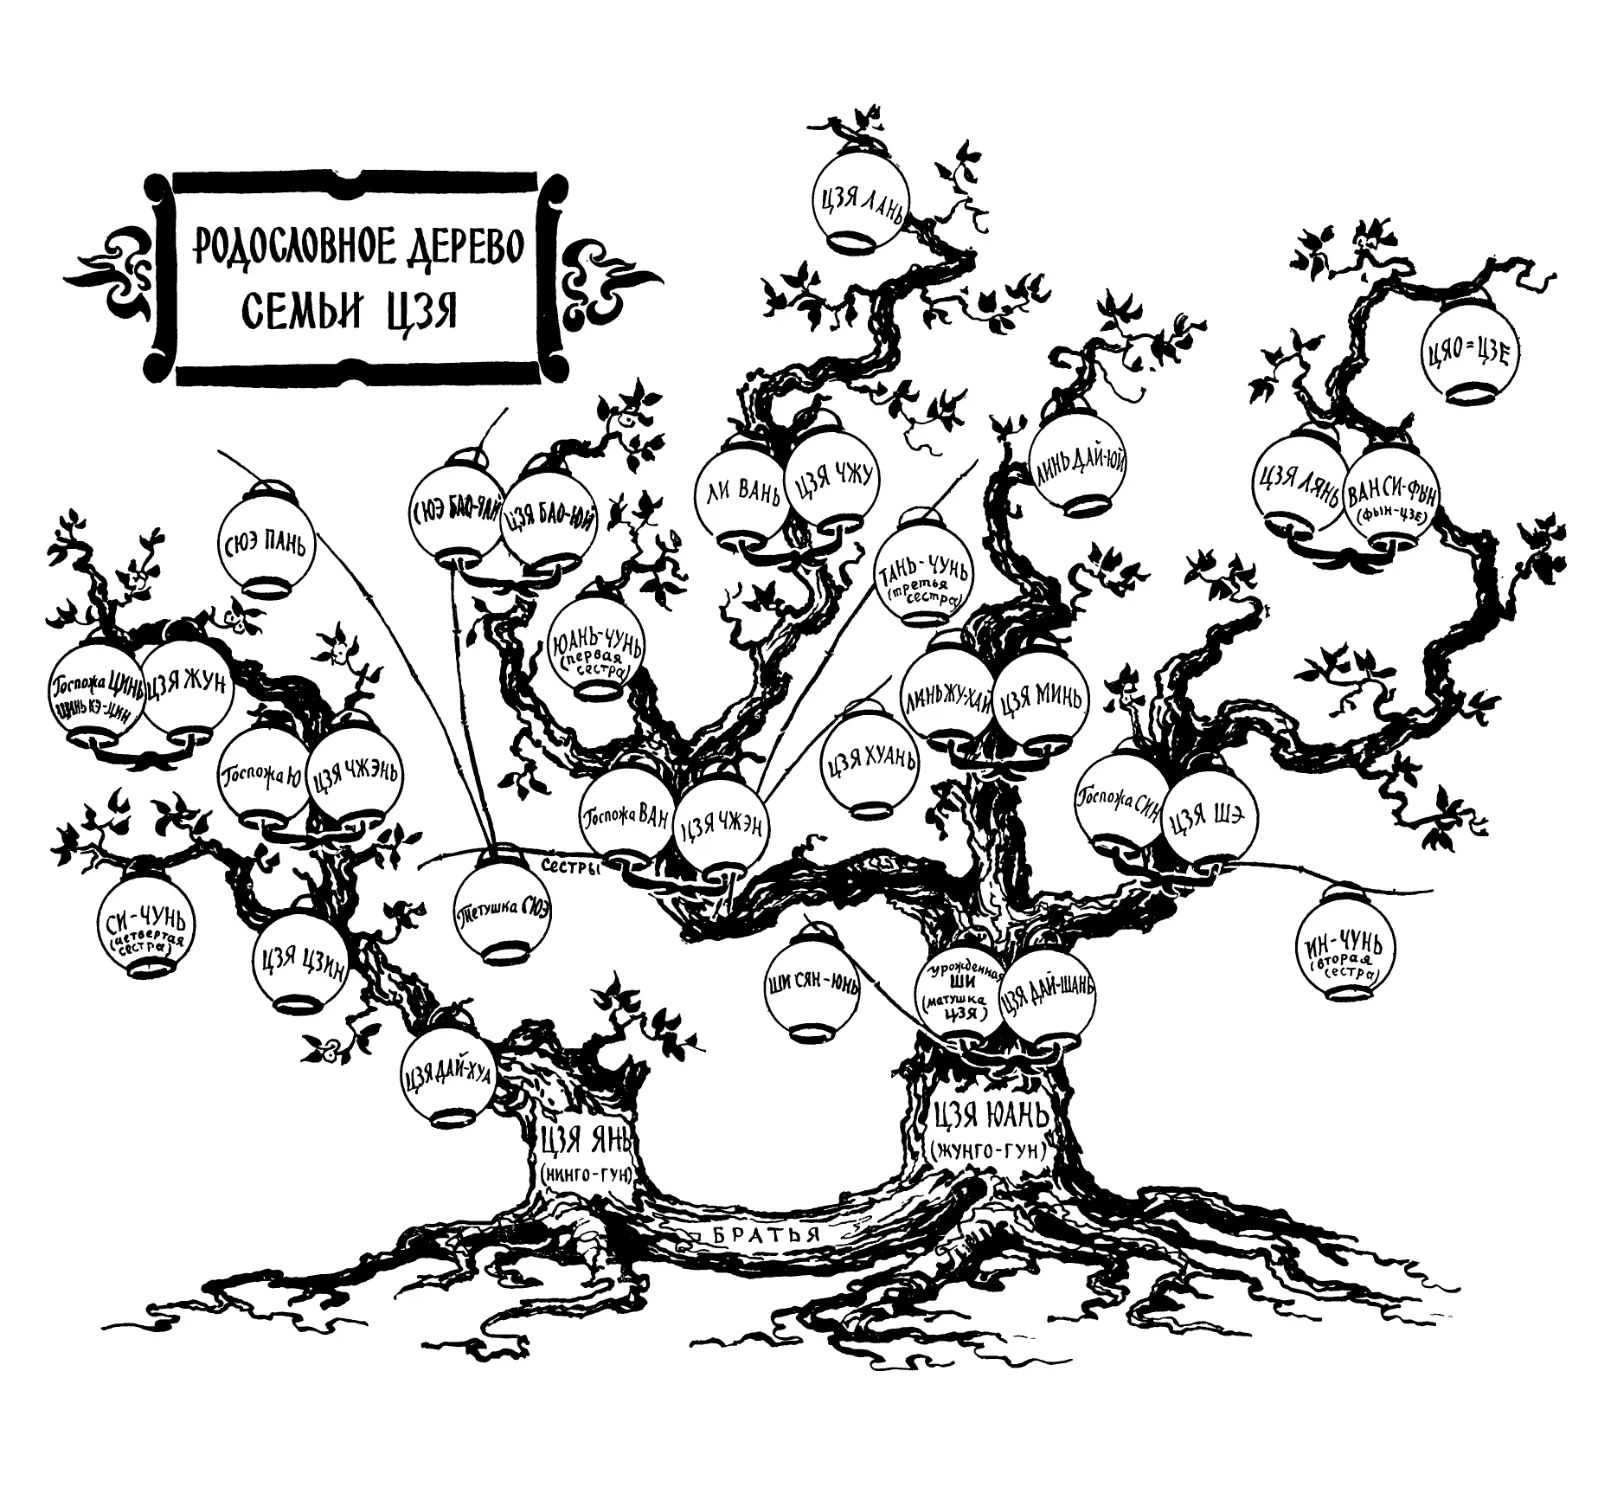 Вклейка. Родословное дерево семьи Цзя